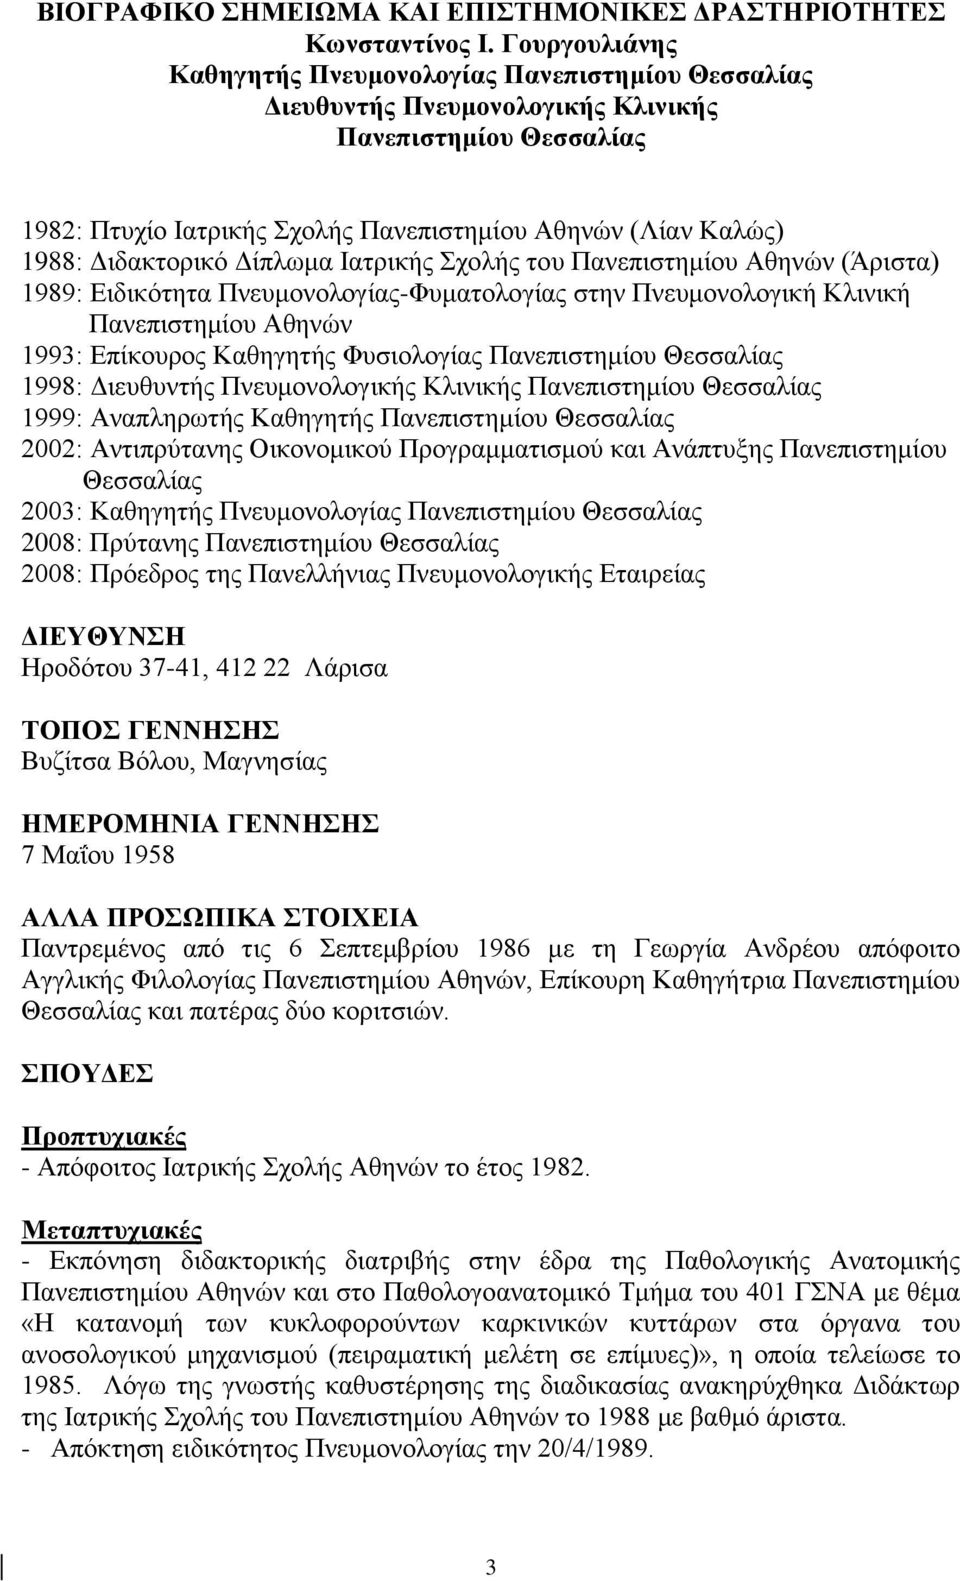 Διδακτορικό Δίπλωμα Ιατρικής Σχολής του Πανεπιστημίου Αθηνών (Άριστα) 1989: Ειδικότητα Πνευμονολογίας-Φυματολογίας στην Πνευμονολογική Κλινική Πανεπιστημίου Αθηνών 1993: Επίκουρος Καθηγητής